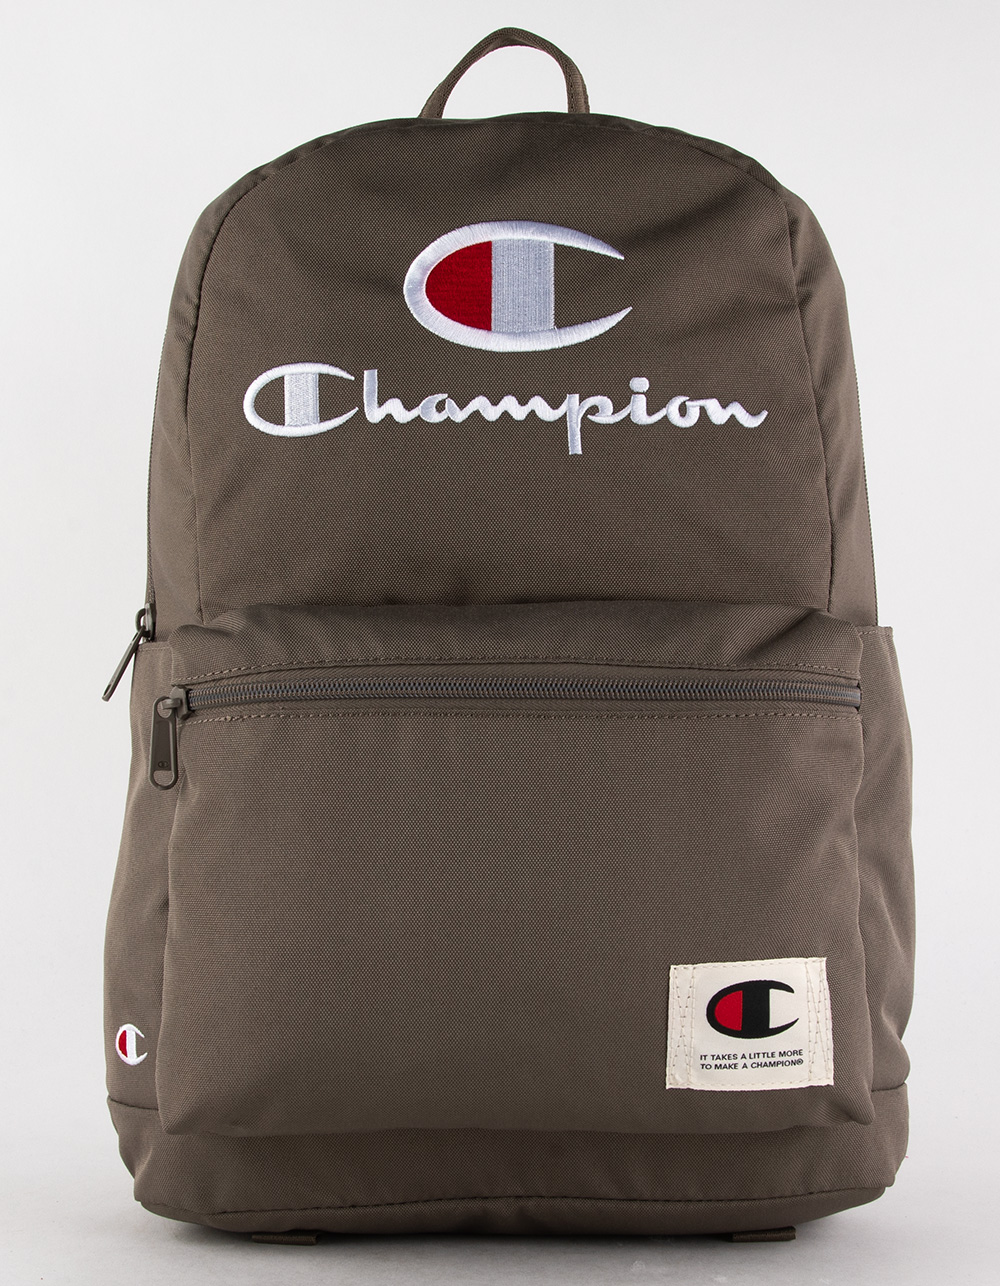 CHAMPION Lifeline 2.0 Backpack